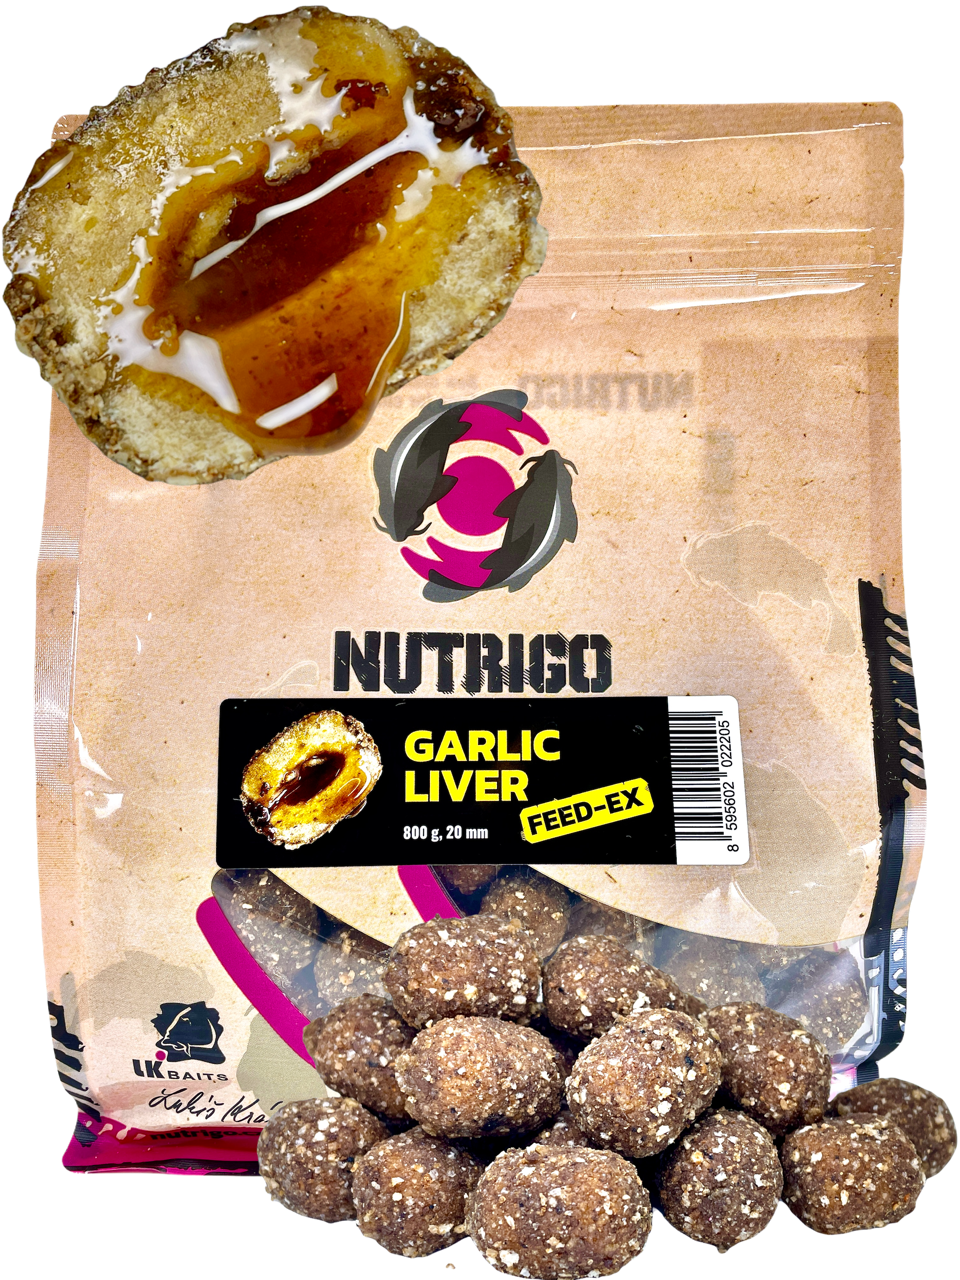 LK Baits Nutrigo FEED-EX Garlic Liver 800g, 20 mm